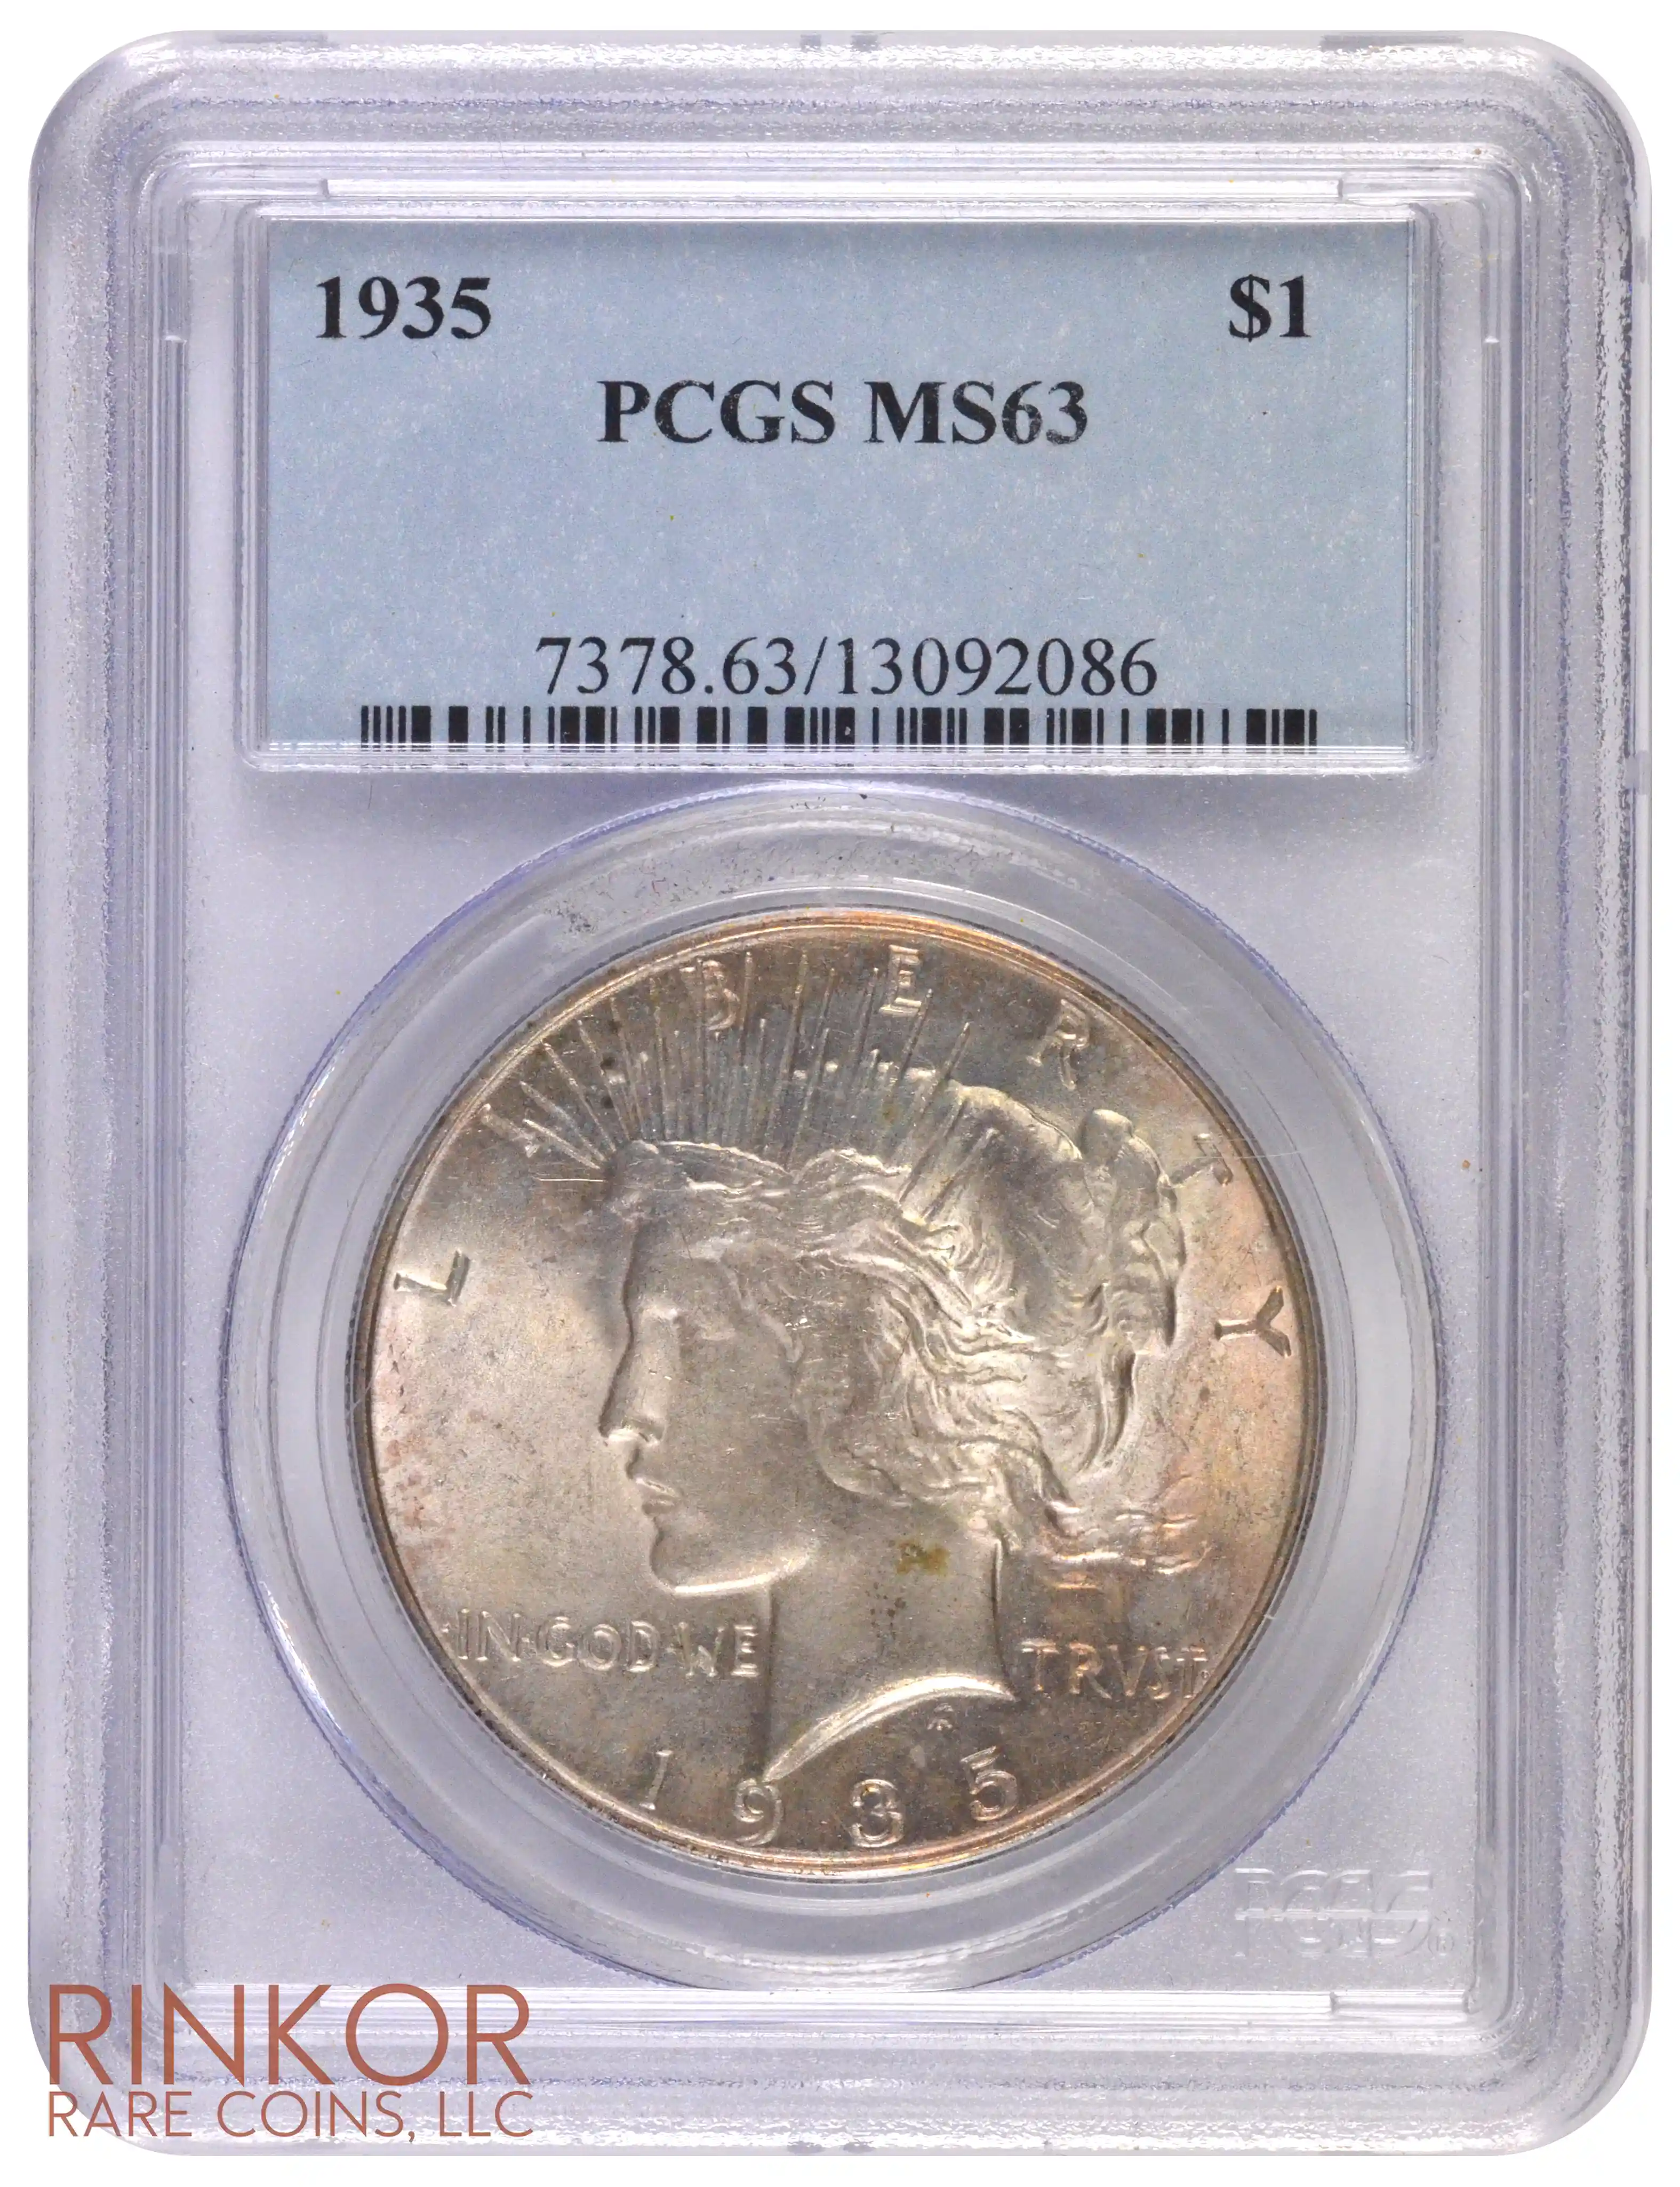 1935 $1 PCGS MS 63